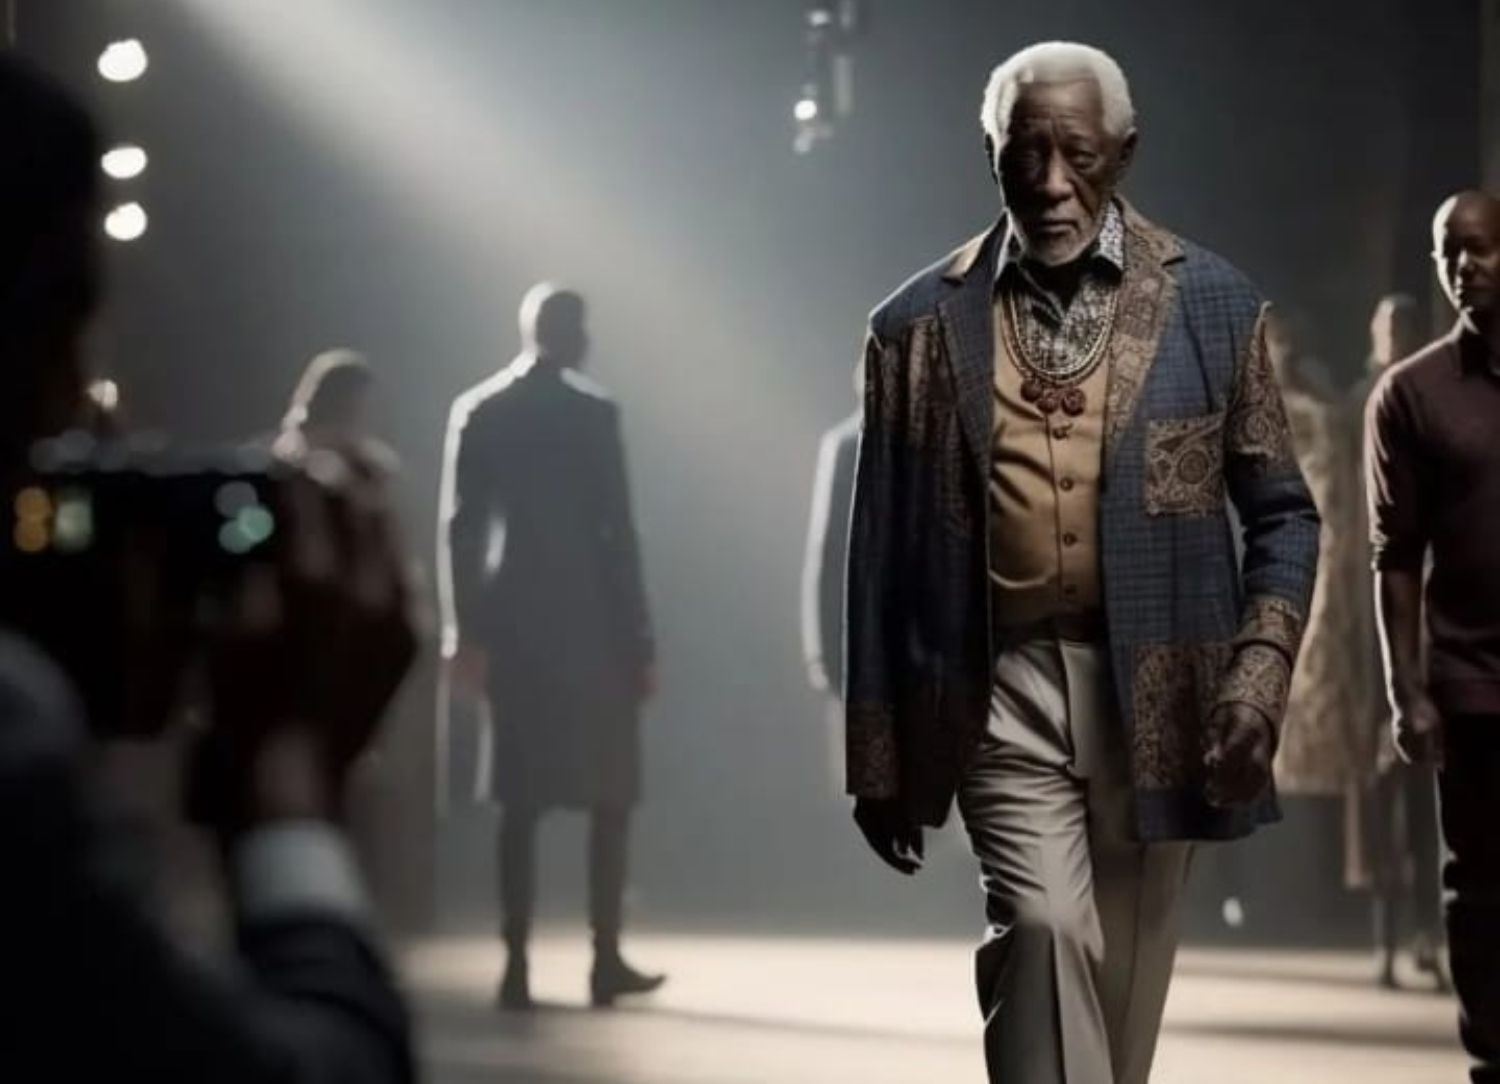 Los mayores se suben a las pasarelas de moda gracias a la inteligencia artificial. Foto: Instagram